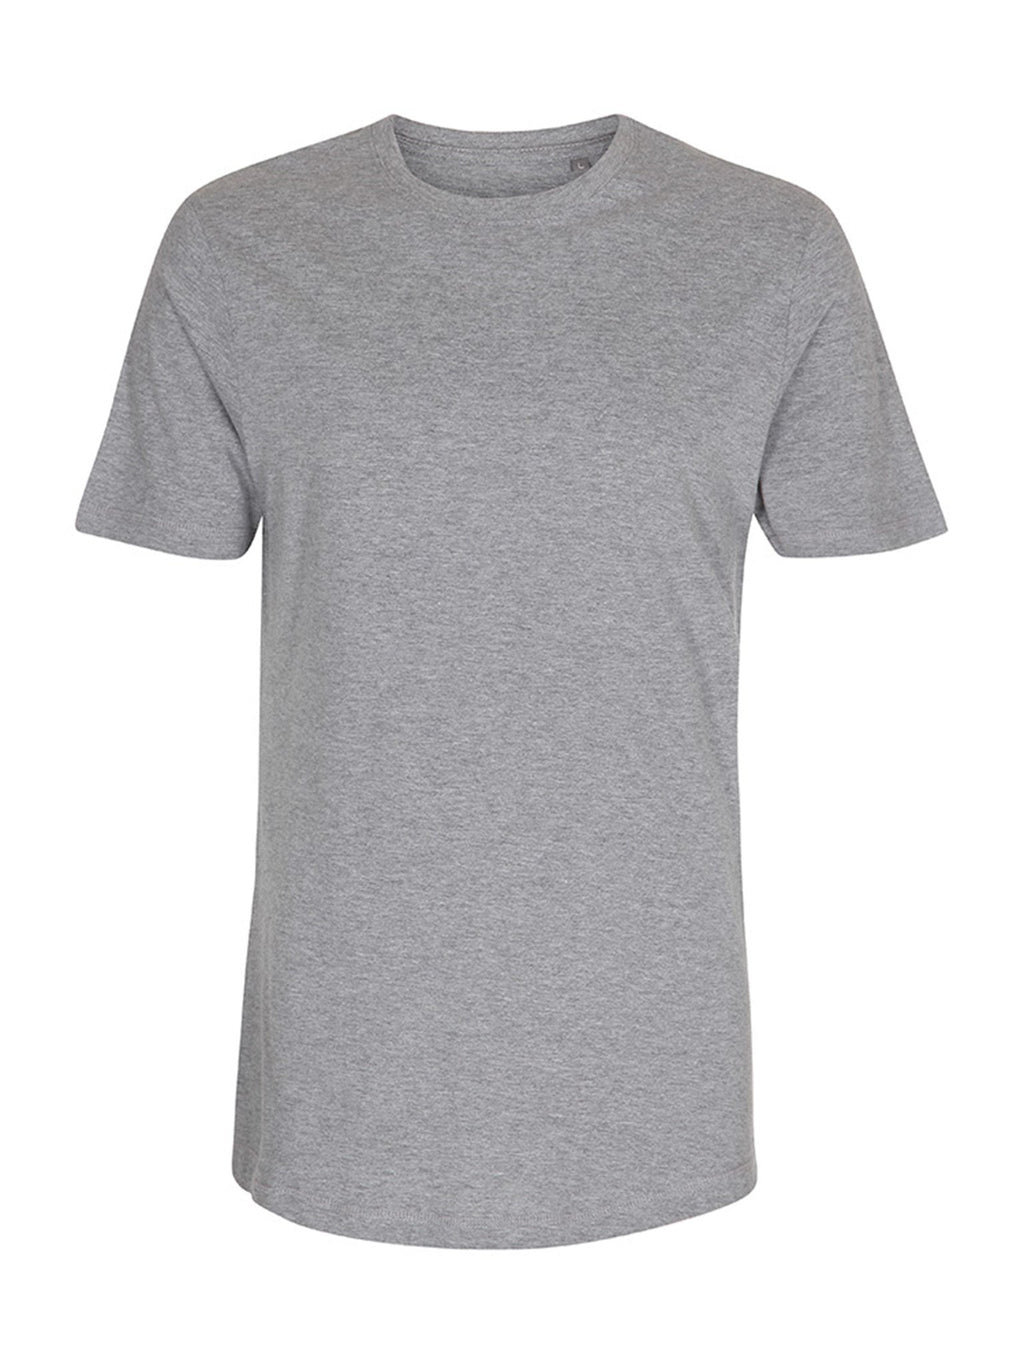 长T恤 - 灰色混合物